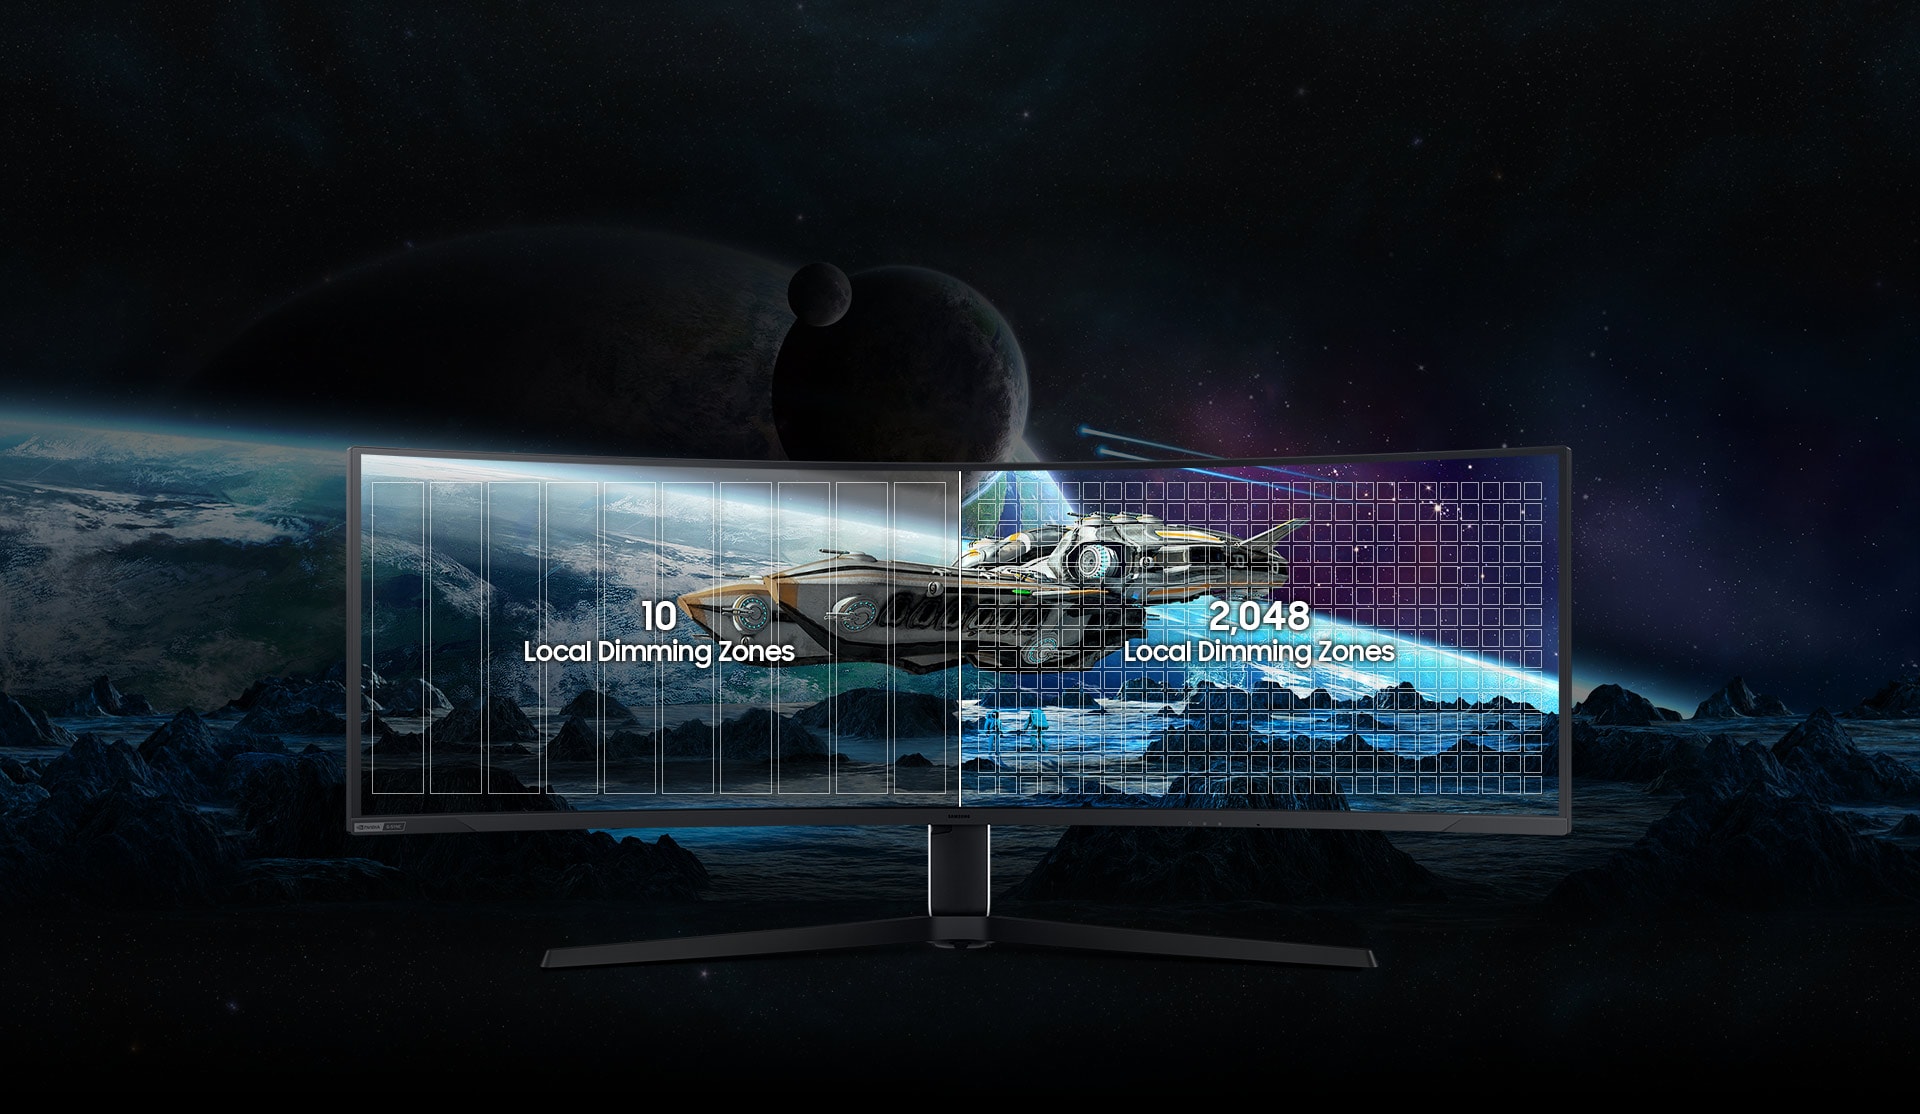 El Odyssey Neo G9 muestra una nave espacial en su pantalla, volando bajo sobre un planeta montañoso. Detrás de la nave espacial vemos otro planeta, que se extiende desde fuera de la pantalla hacia dentro. La pantalla se divide en dos mitades. En la parte izquierda aparecen las palabras “10 zonas de atenuación local”, mientras que en la derecha se muestra la frase “2.048 zonas de atenuación local”.